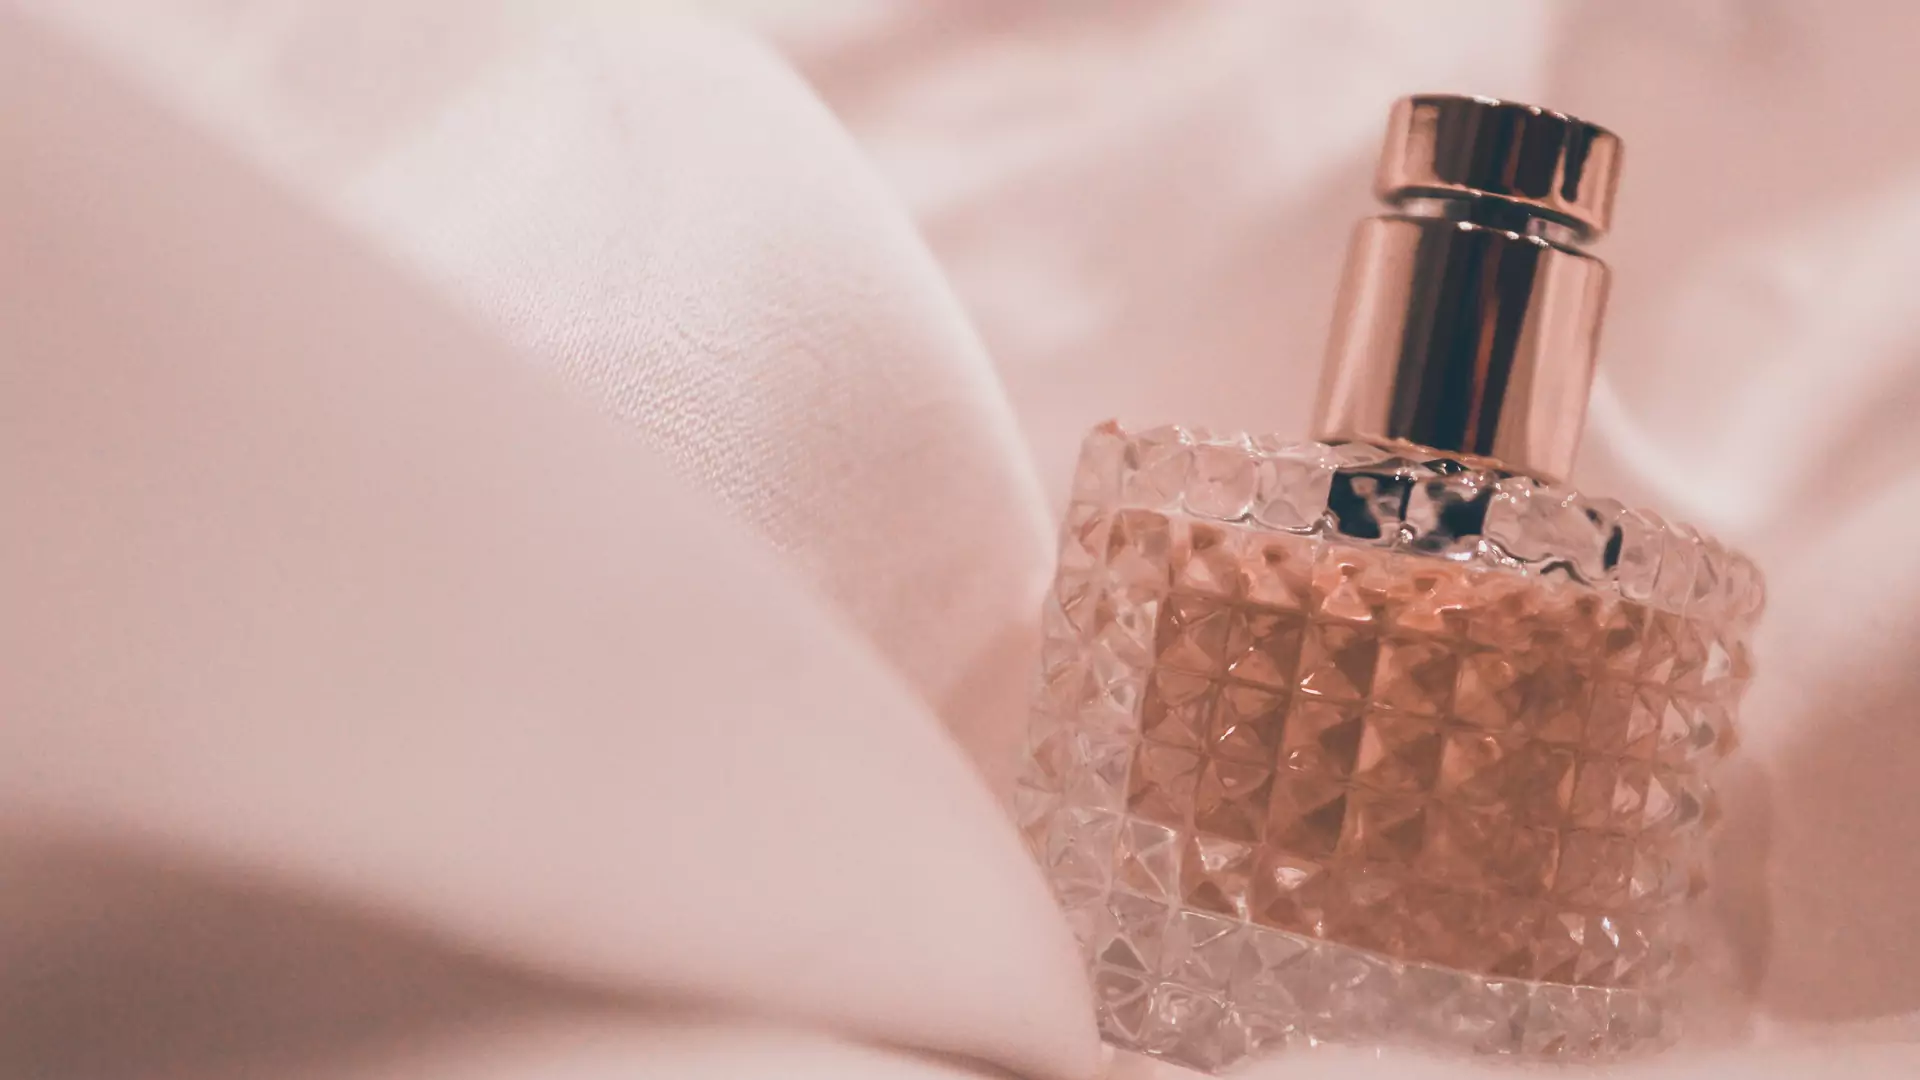 Faceci uważają te zapachy za niezwykle seksowne: TOP 5 nieznanych, a uwodzicielskich perfum na zimę